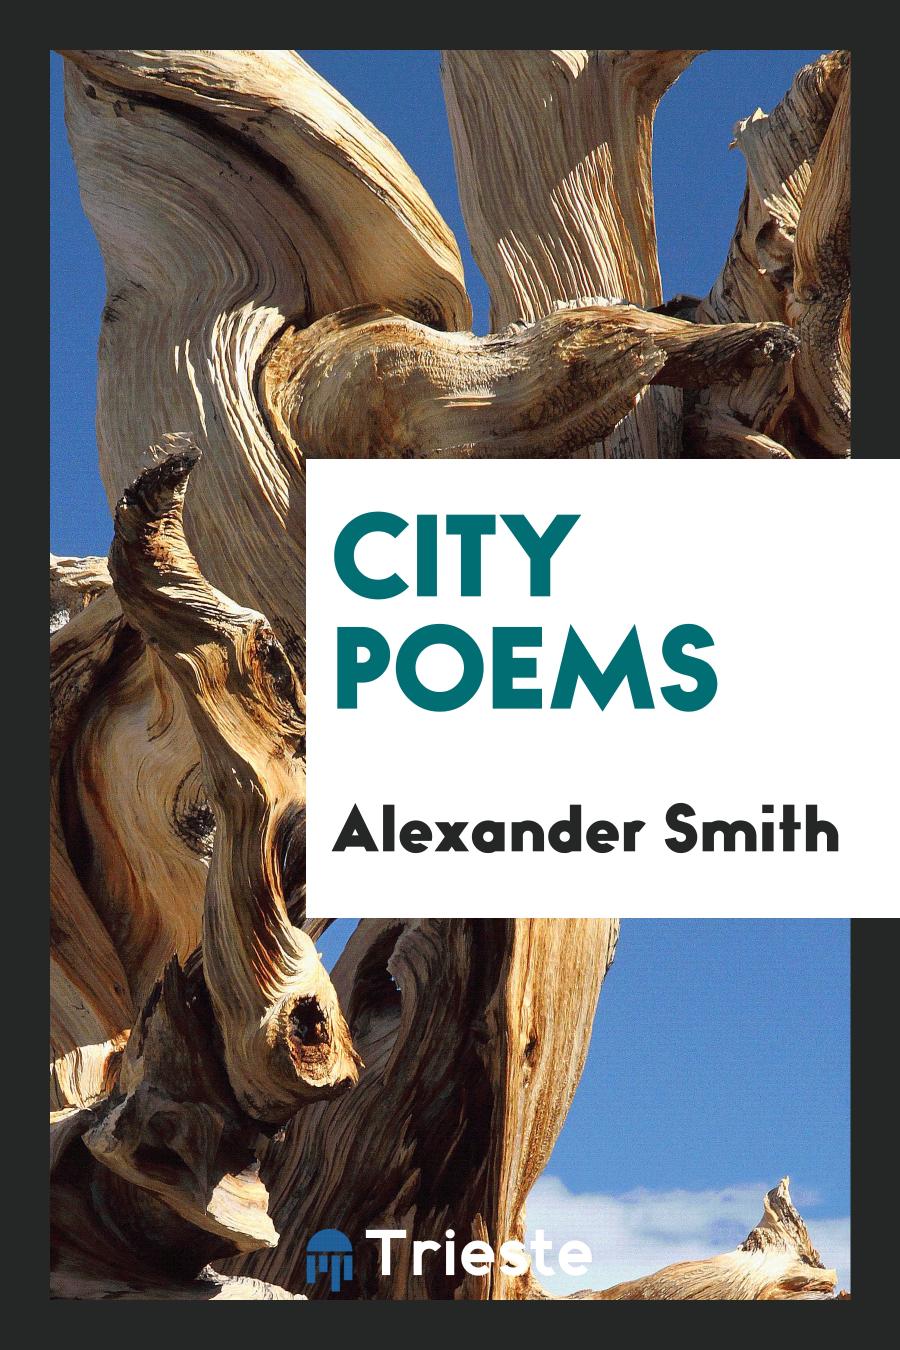 City poems